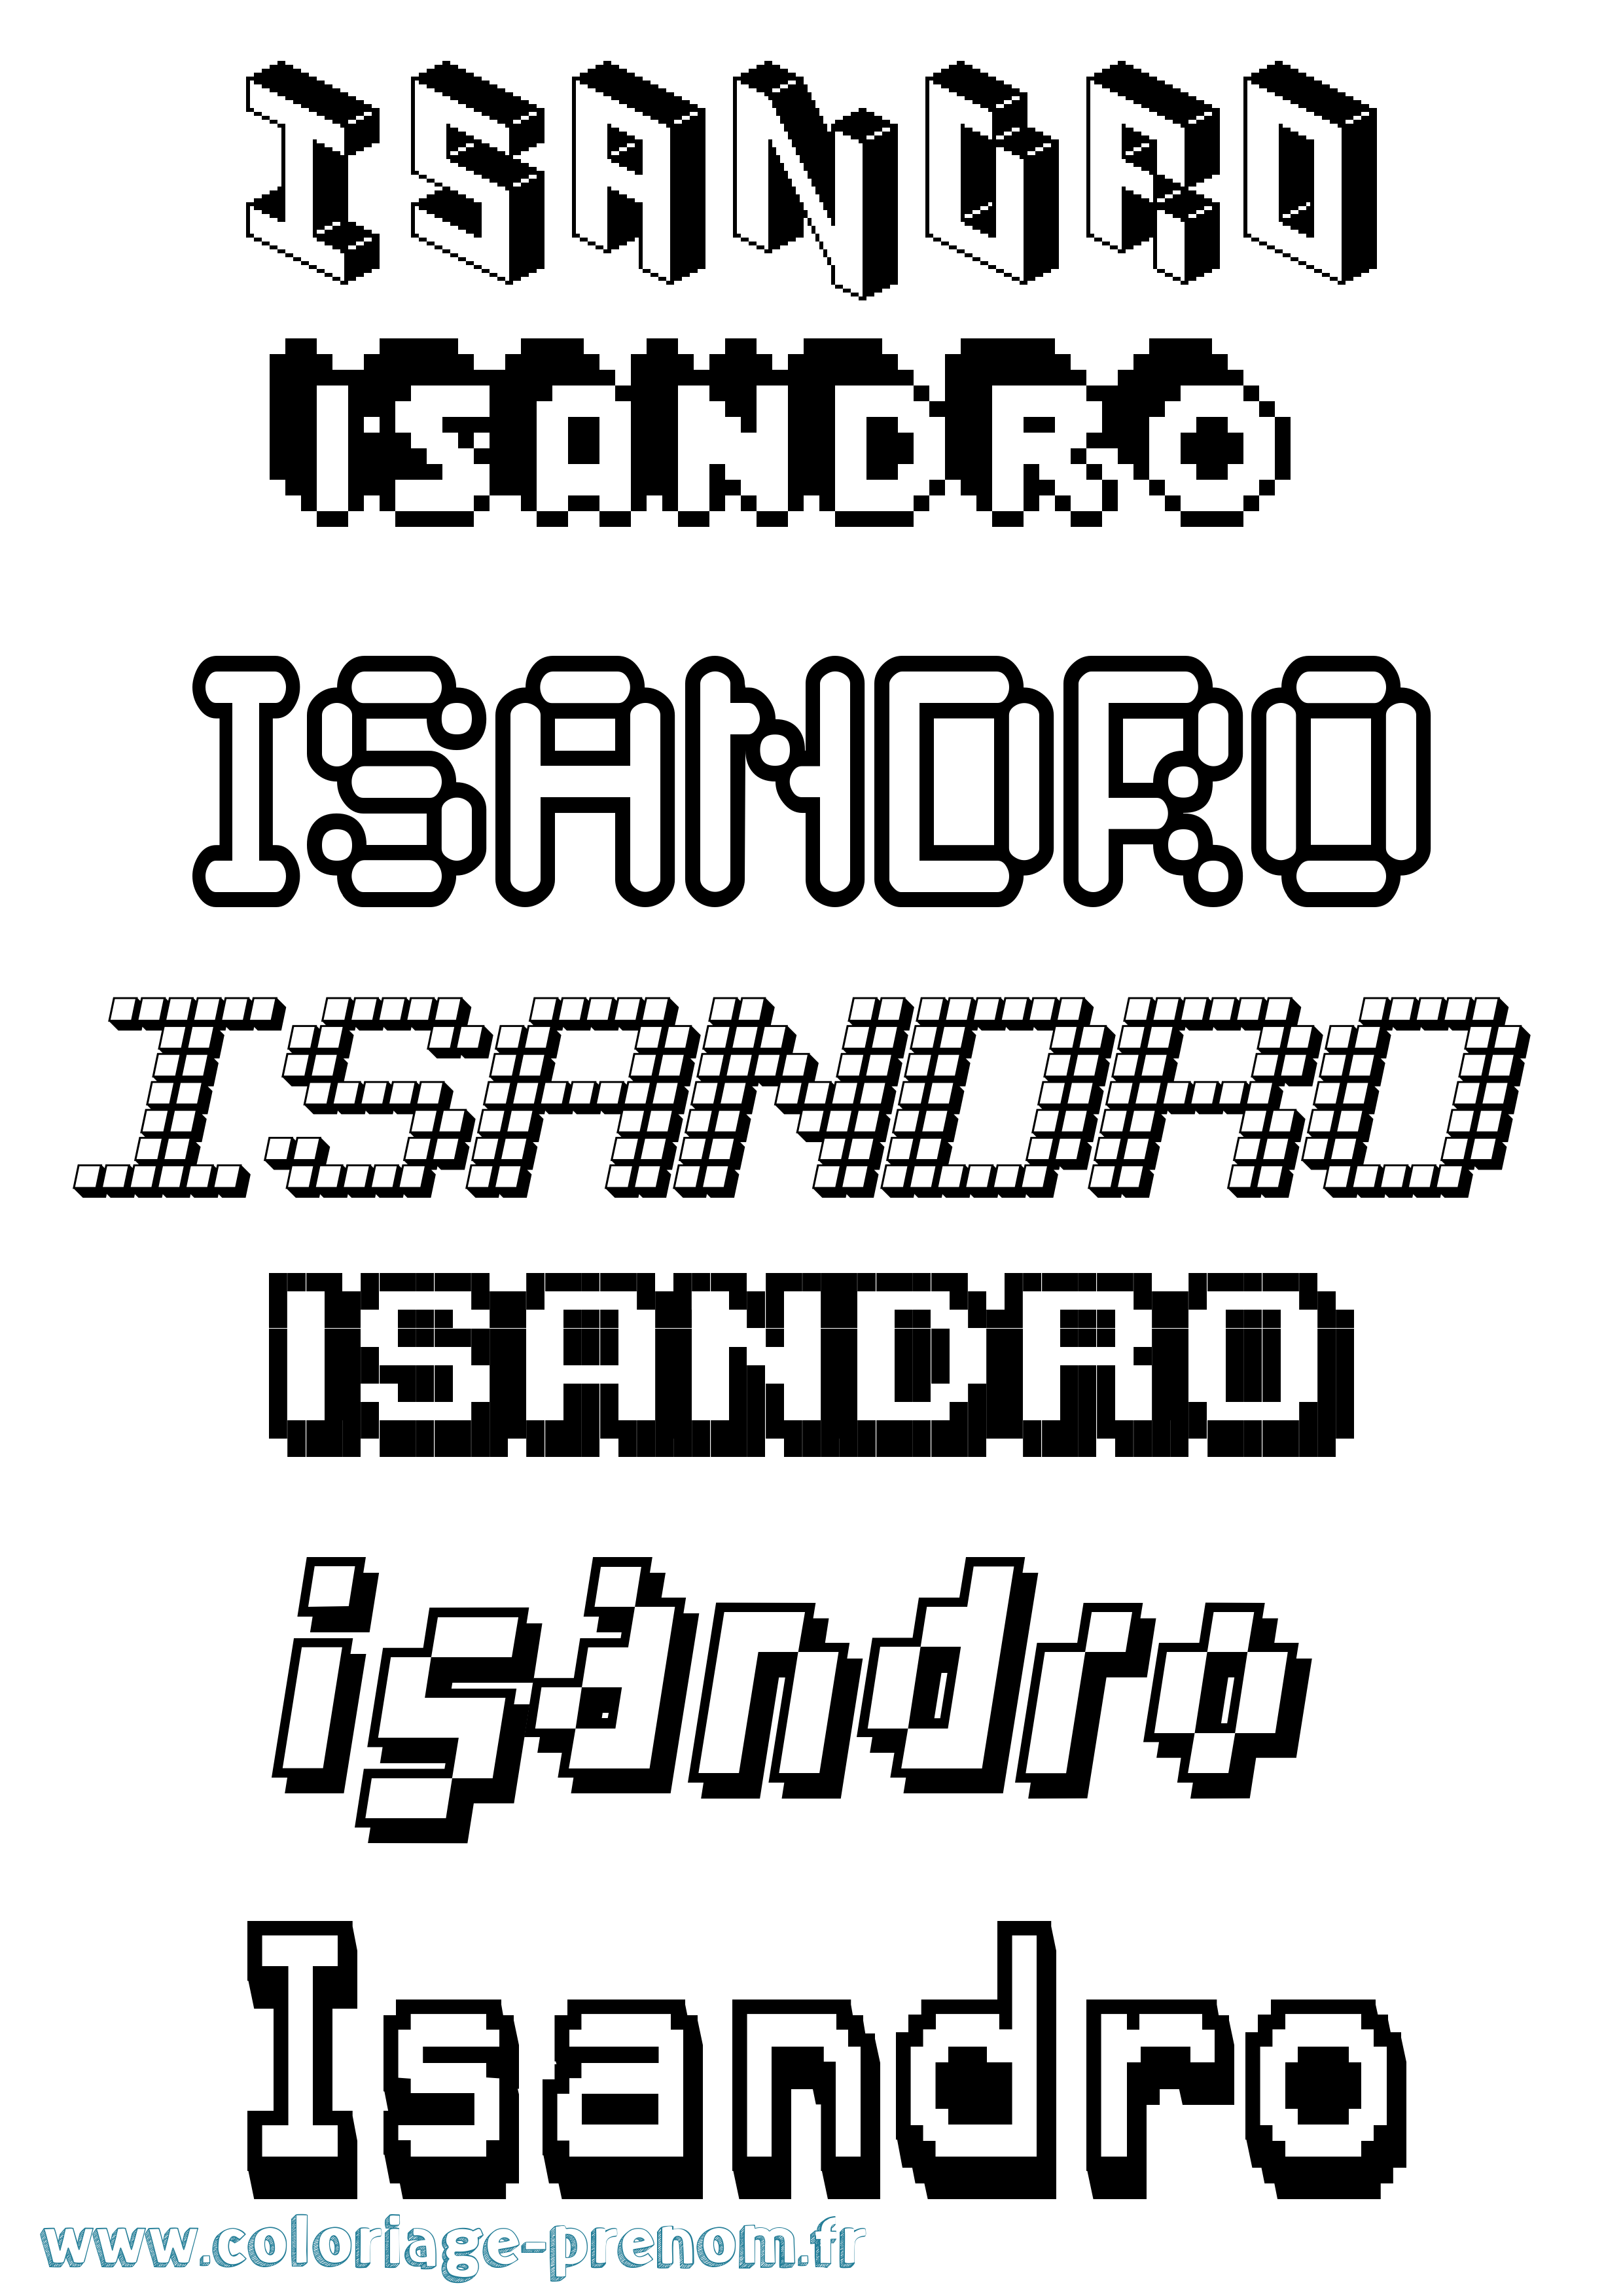 Coloriage prénom Isandro Pixel